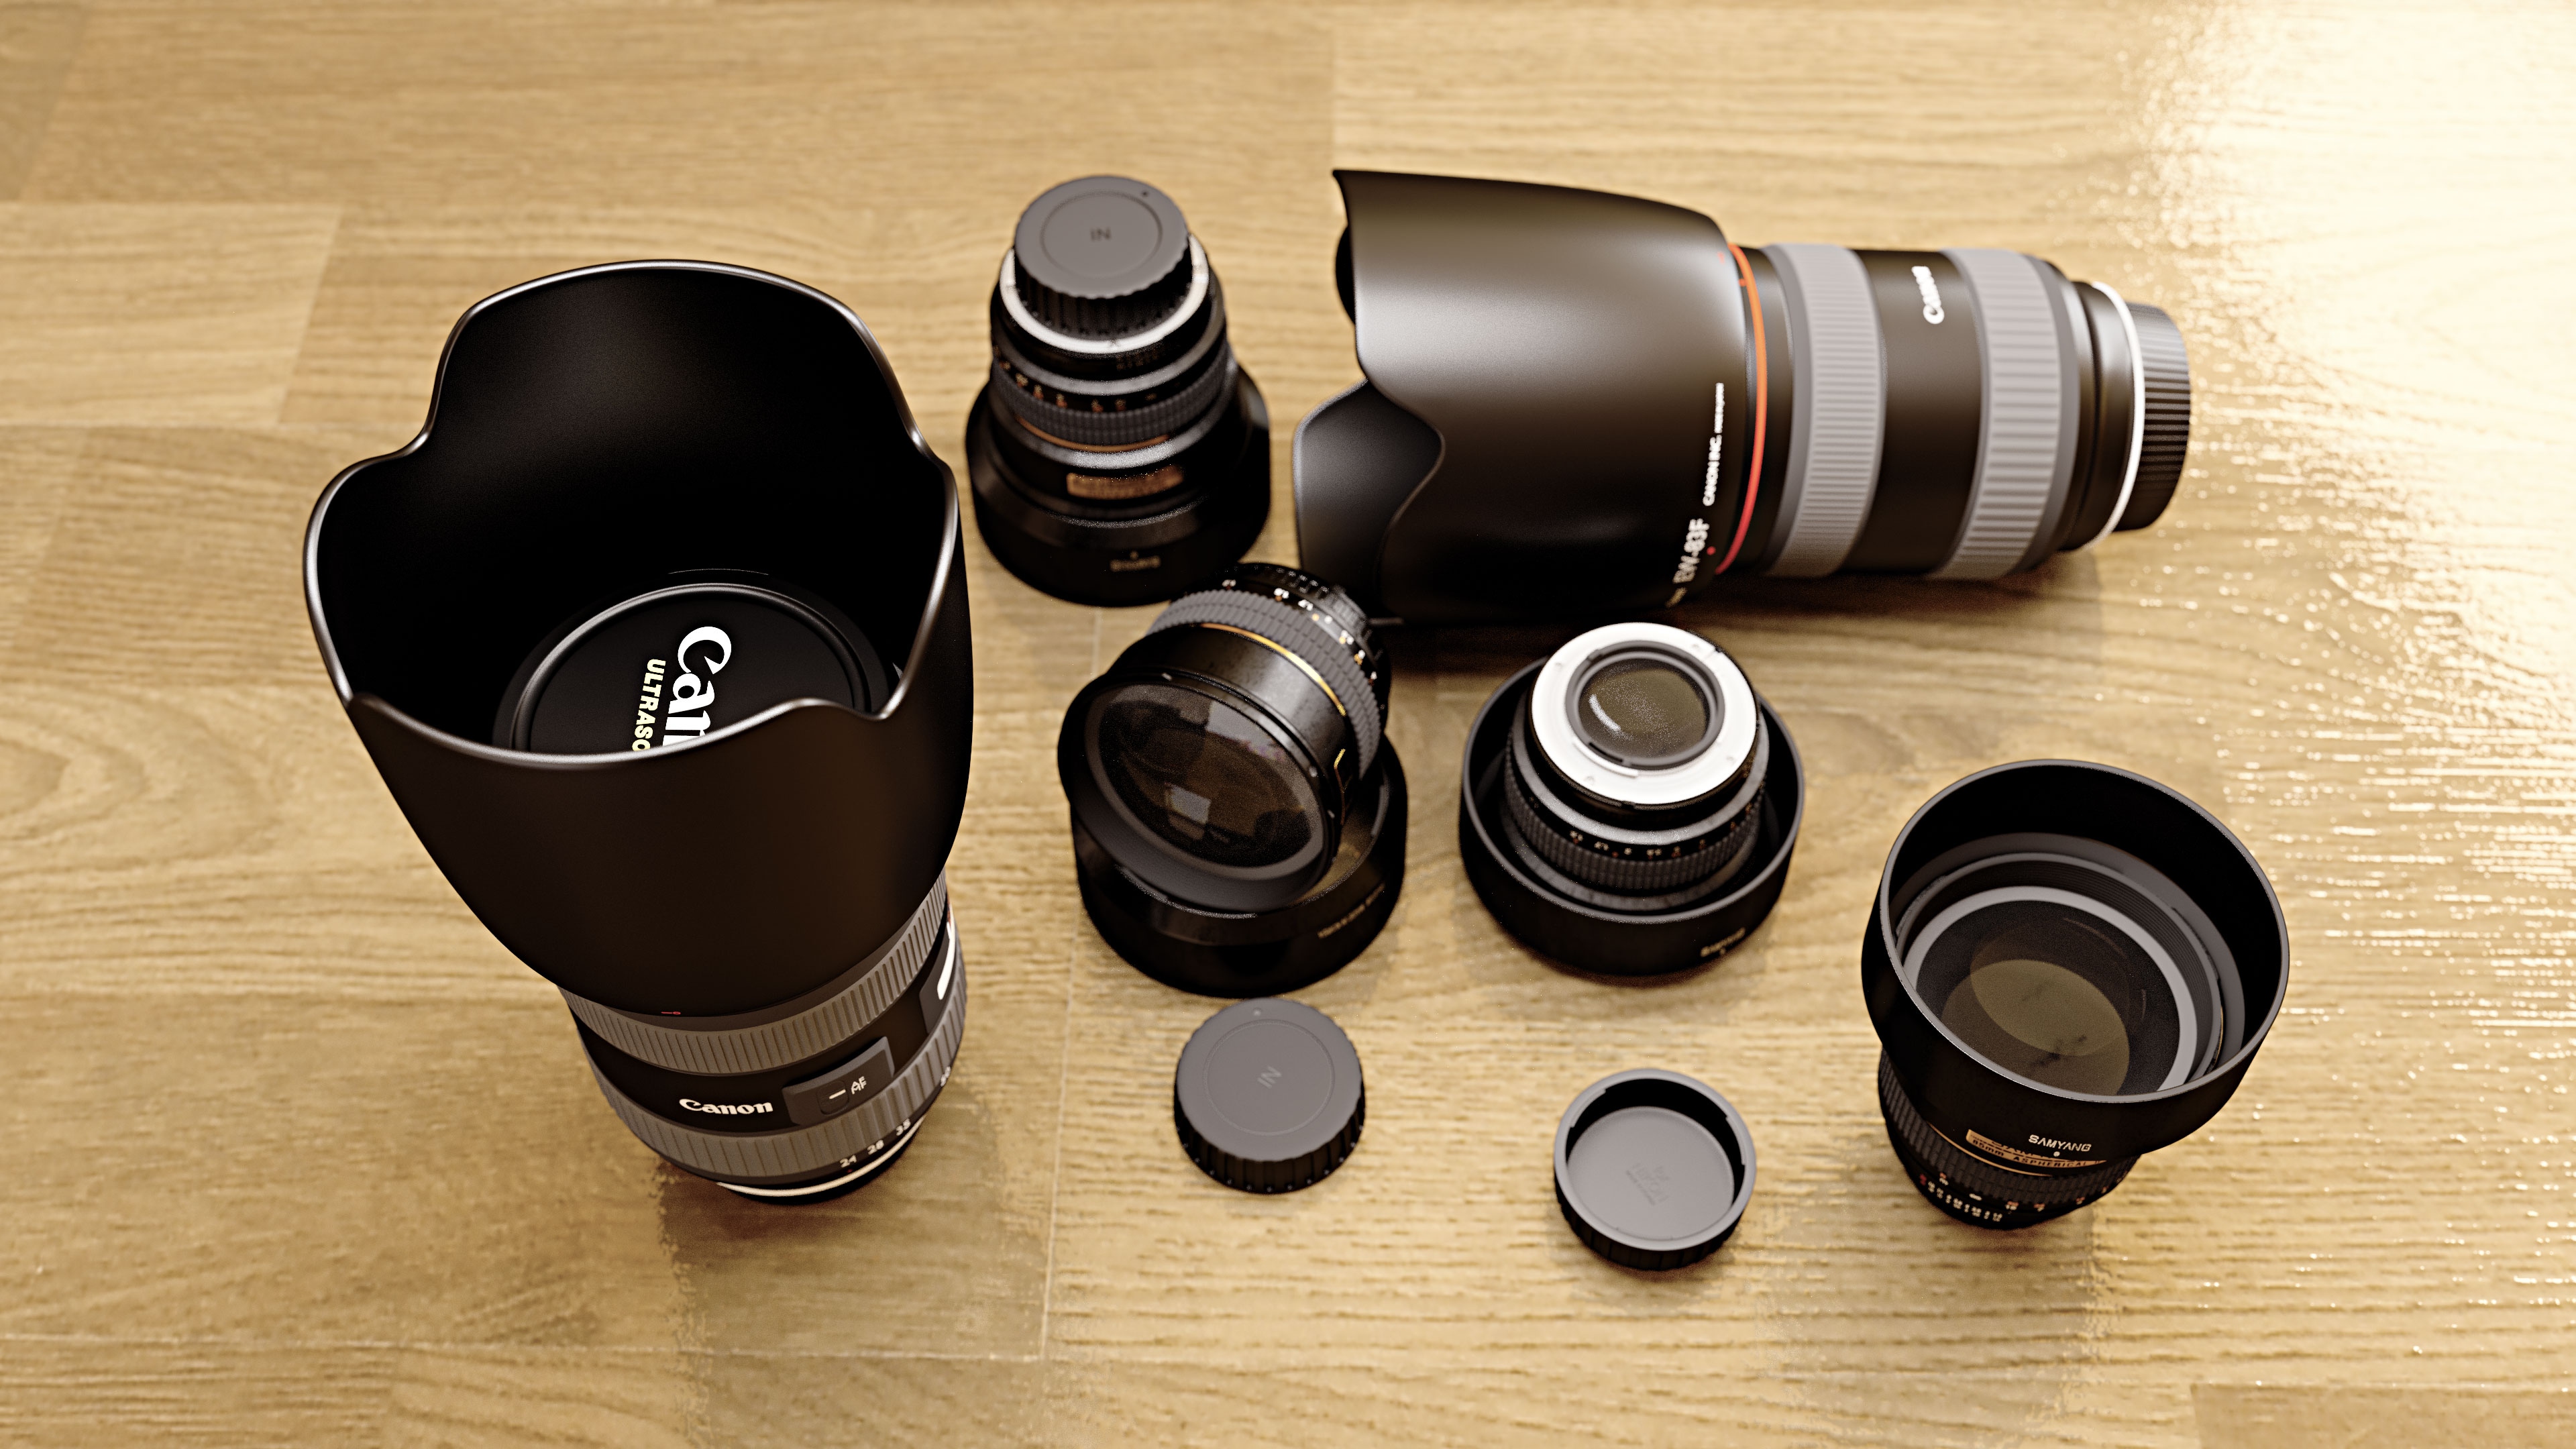 Canon Camera Lens Collection